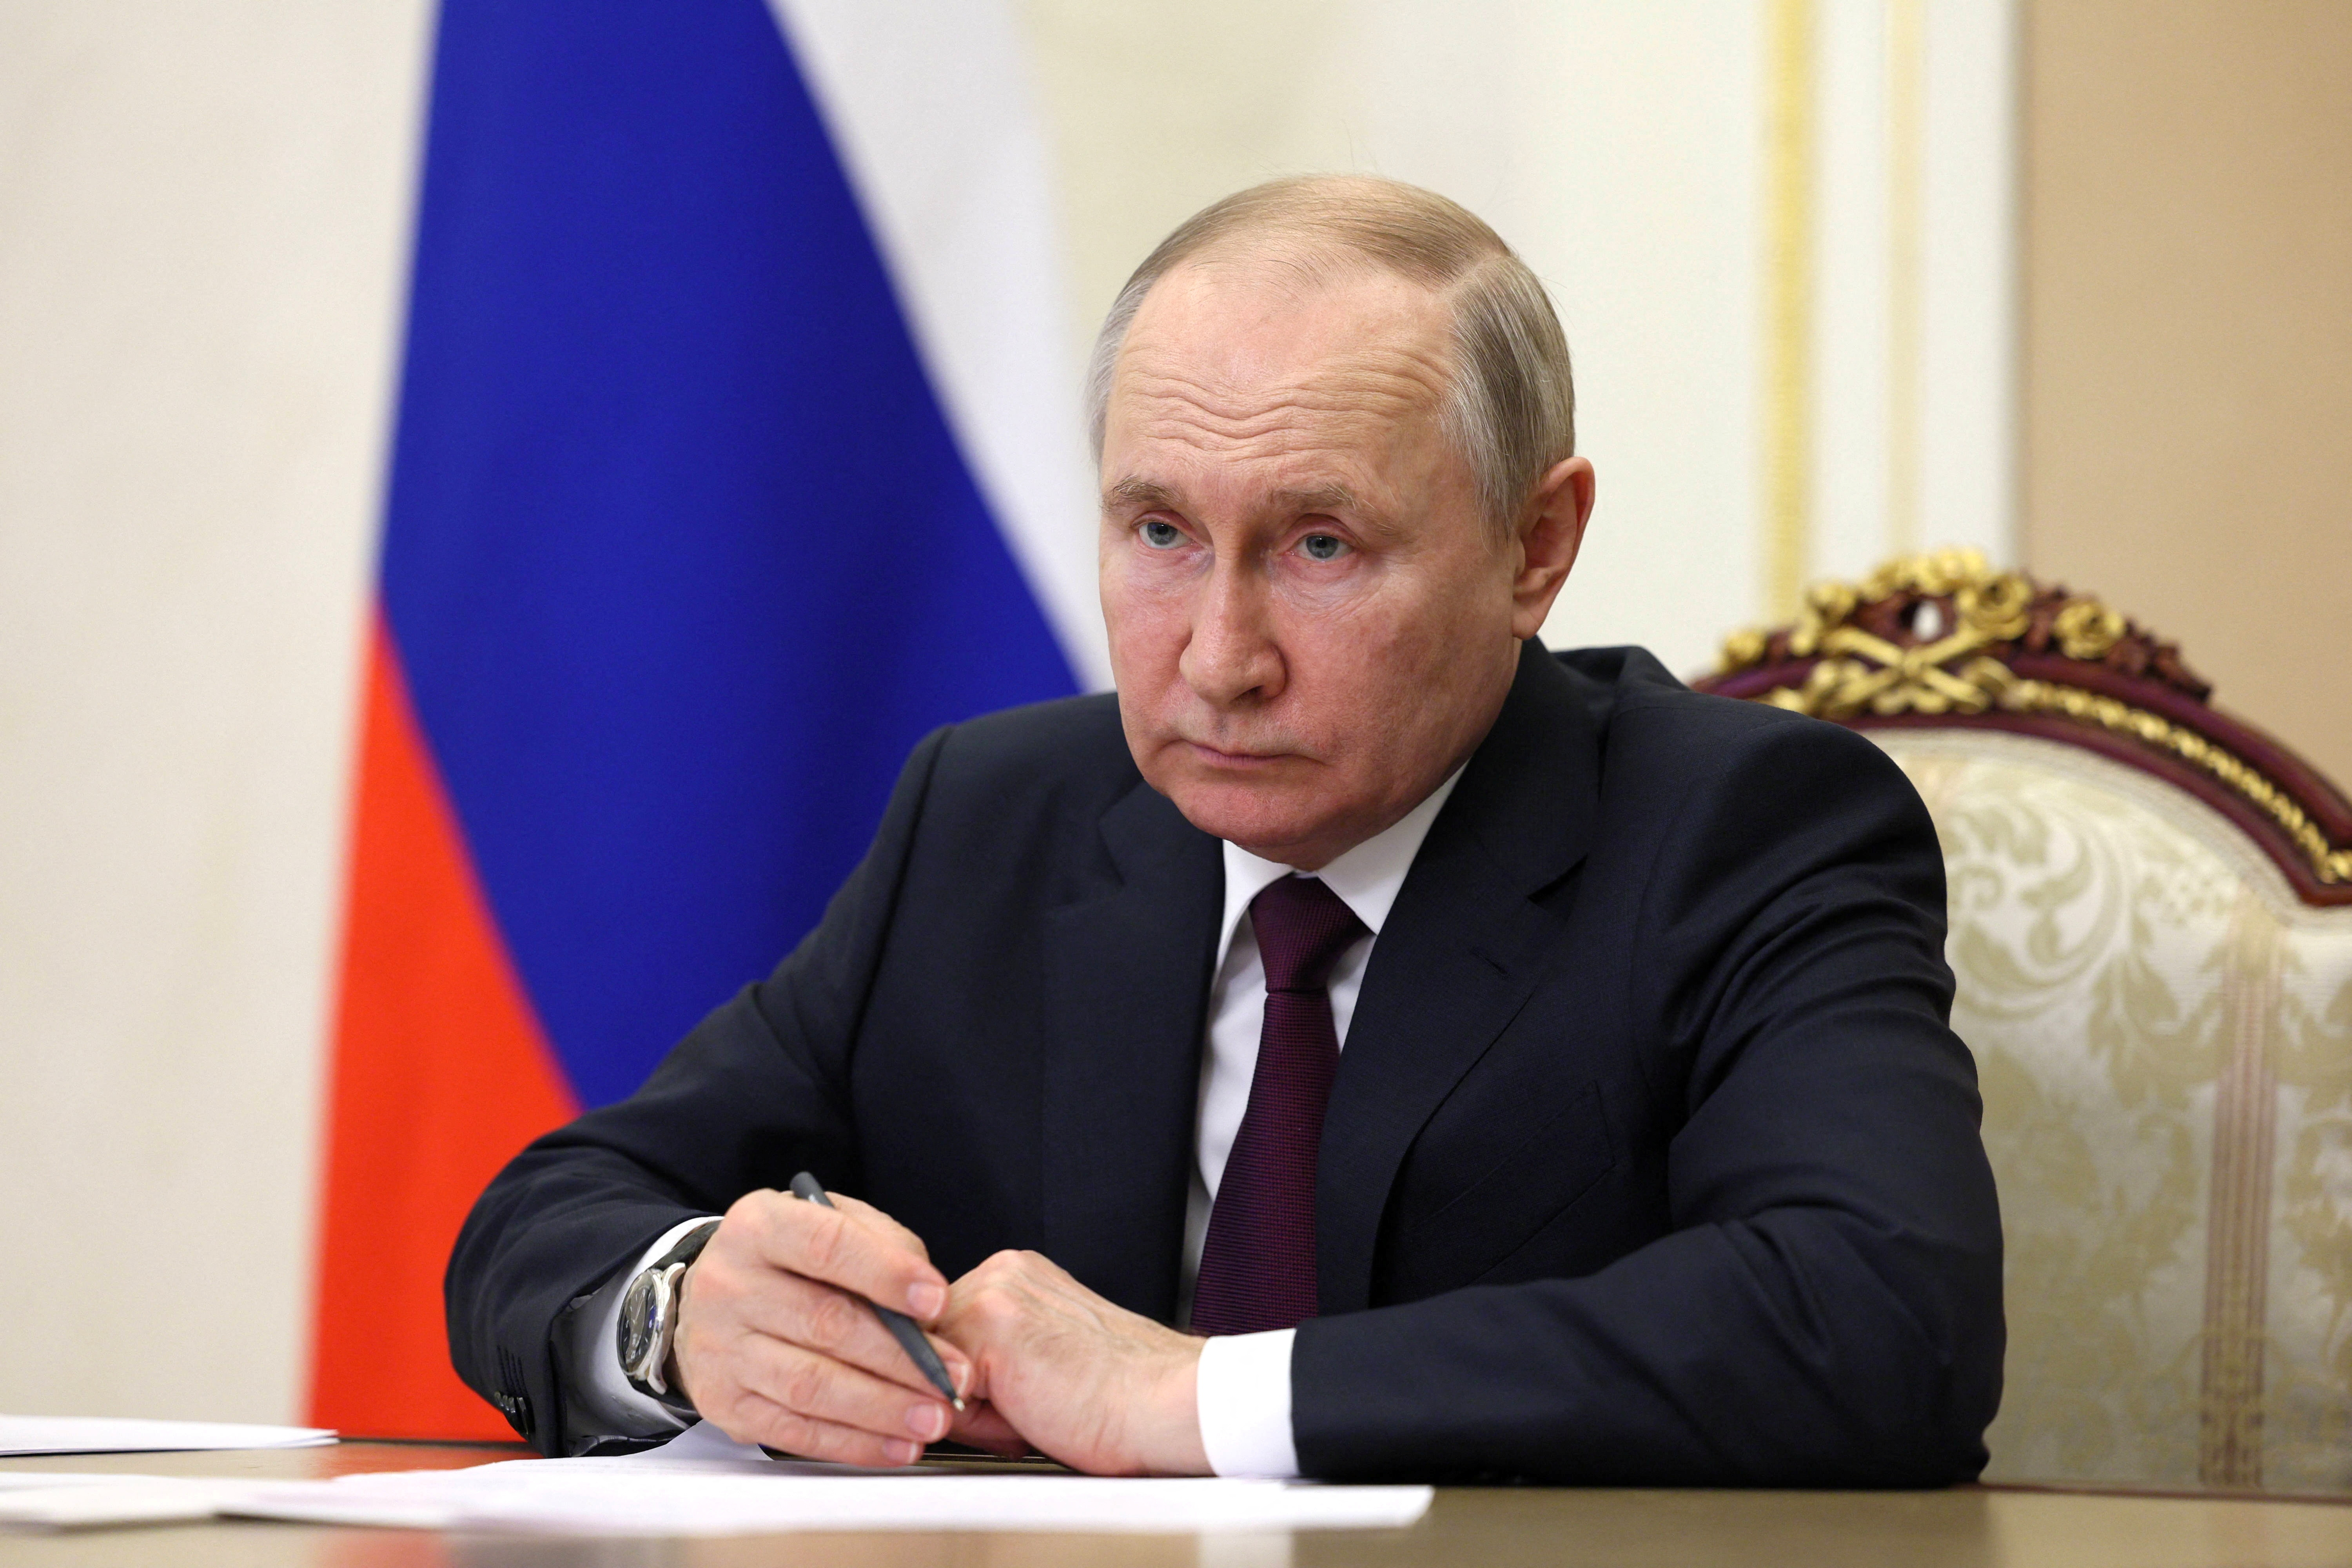 La élite rusa ya no cree que Putin pueda ganar la guerra en Ucrania: “Sólo esperan que Rusia pierda sin humillación”